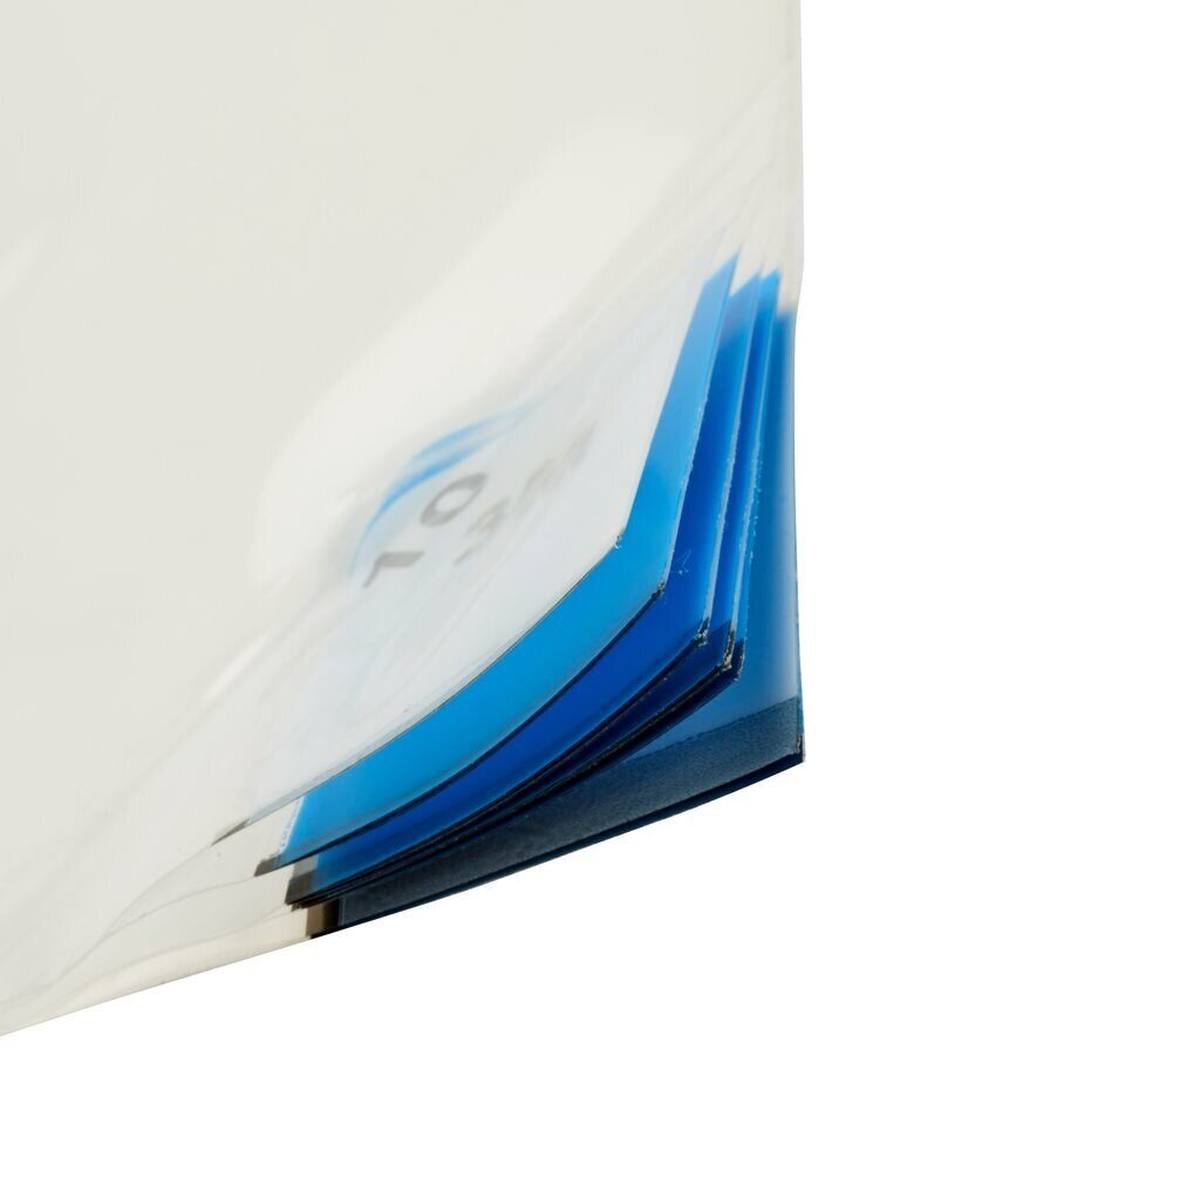 3M 4300 Nomad Tappetino adesivo per polveri sottili, bianco, 1,15 m x 0,6 m, 40 pezzi strati di polietilene trasparente